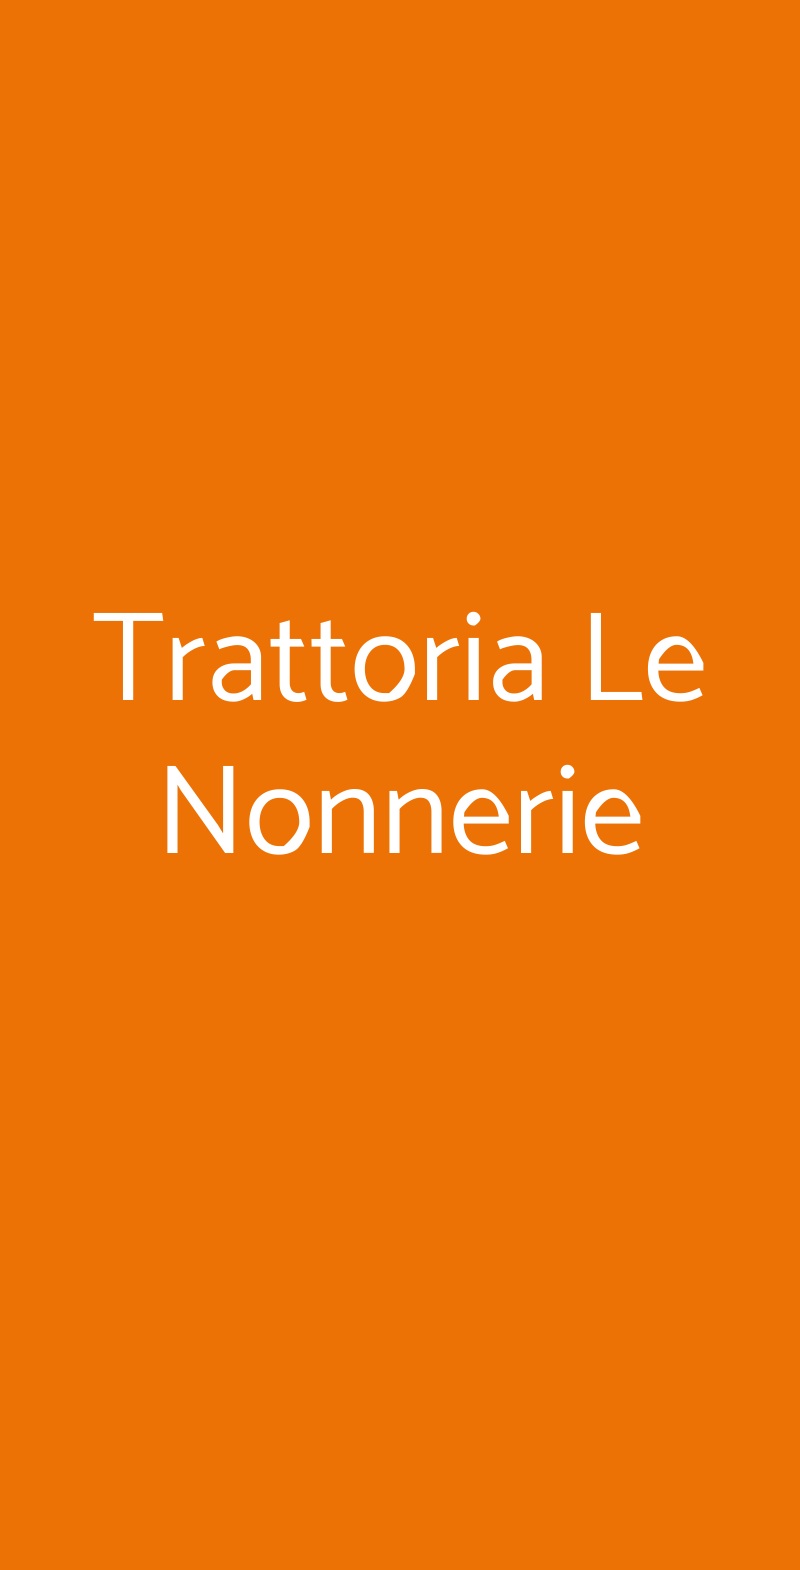 Trattoria Le Nonnerie Napoli menù 1 pagina